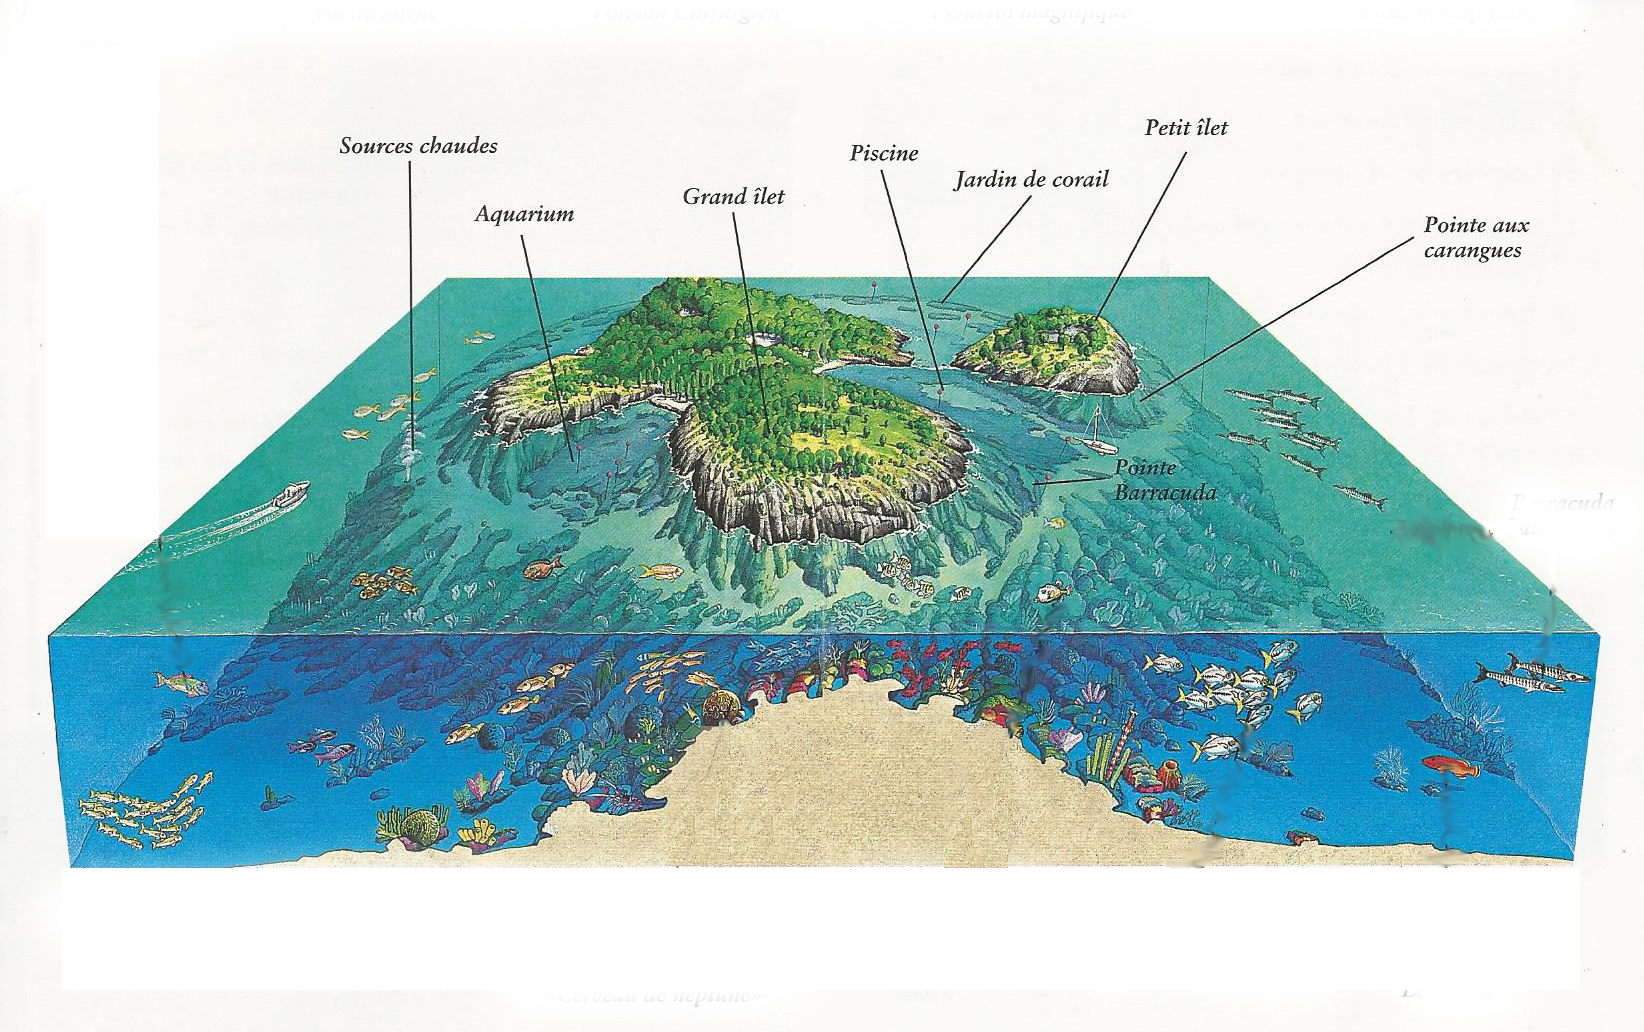 la reserve cousteau - Image